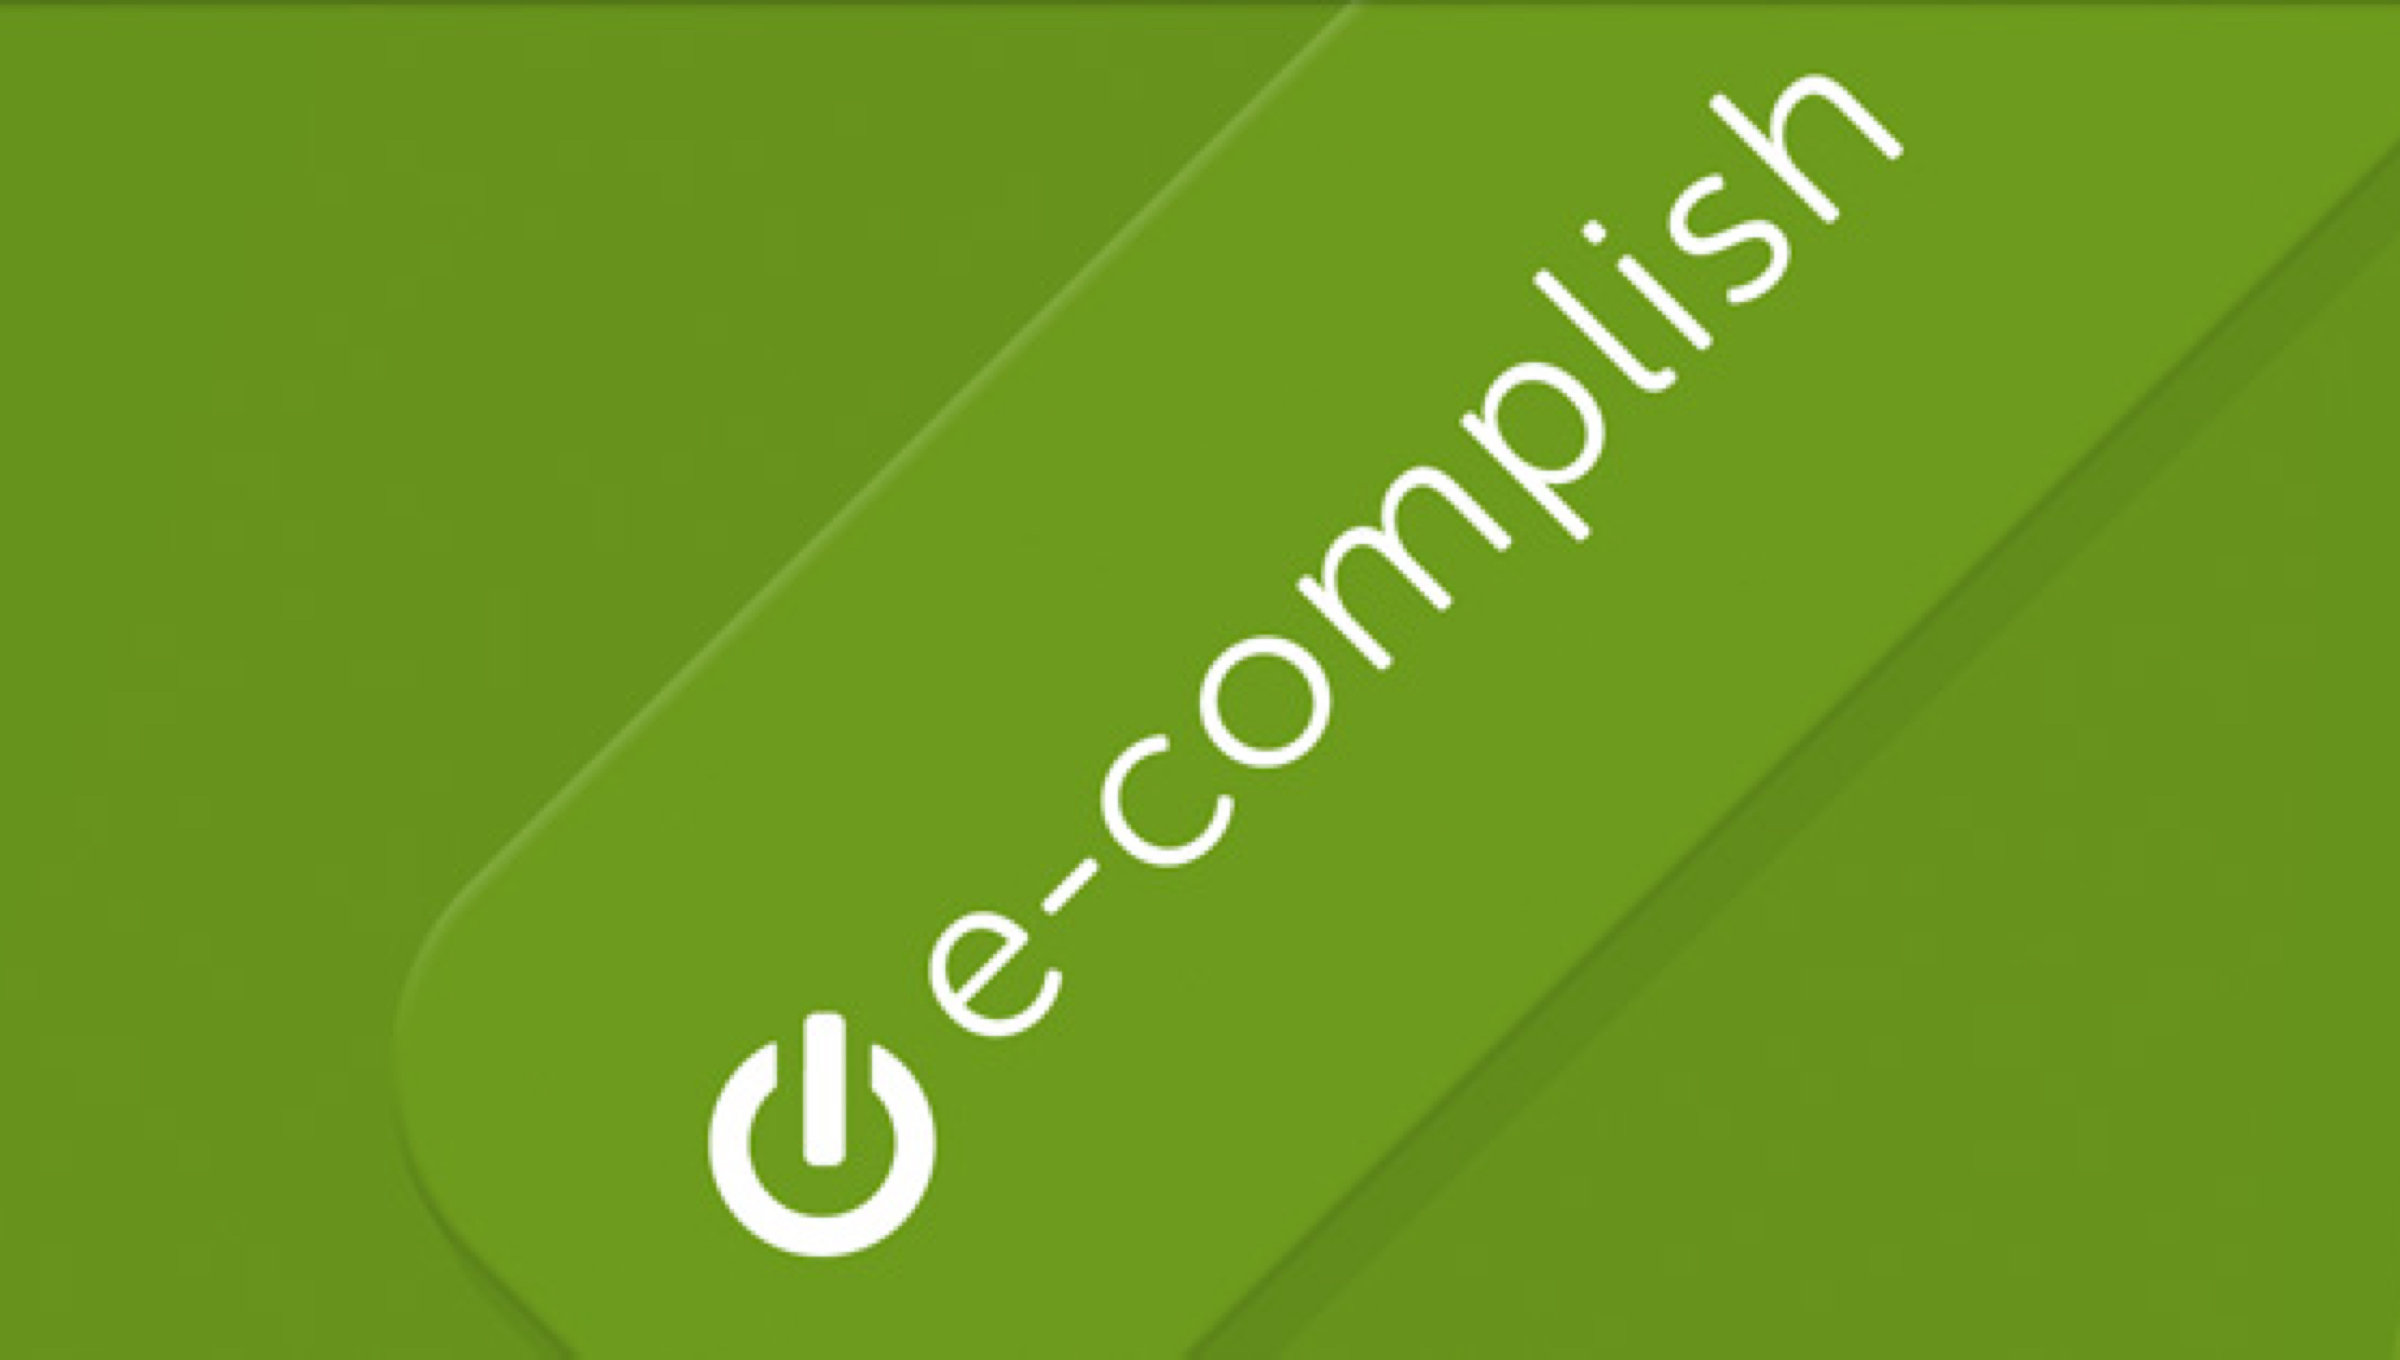 E-Complish Photo